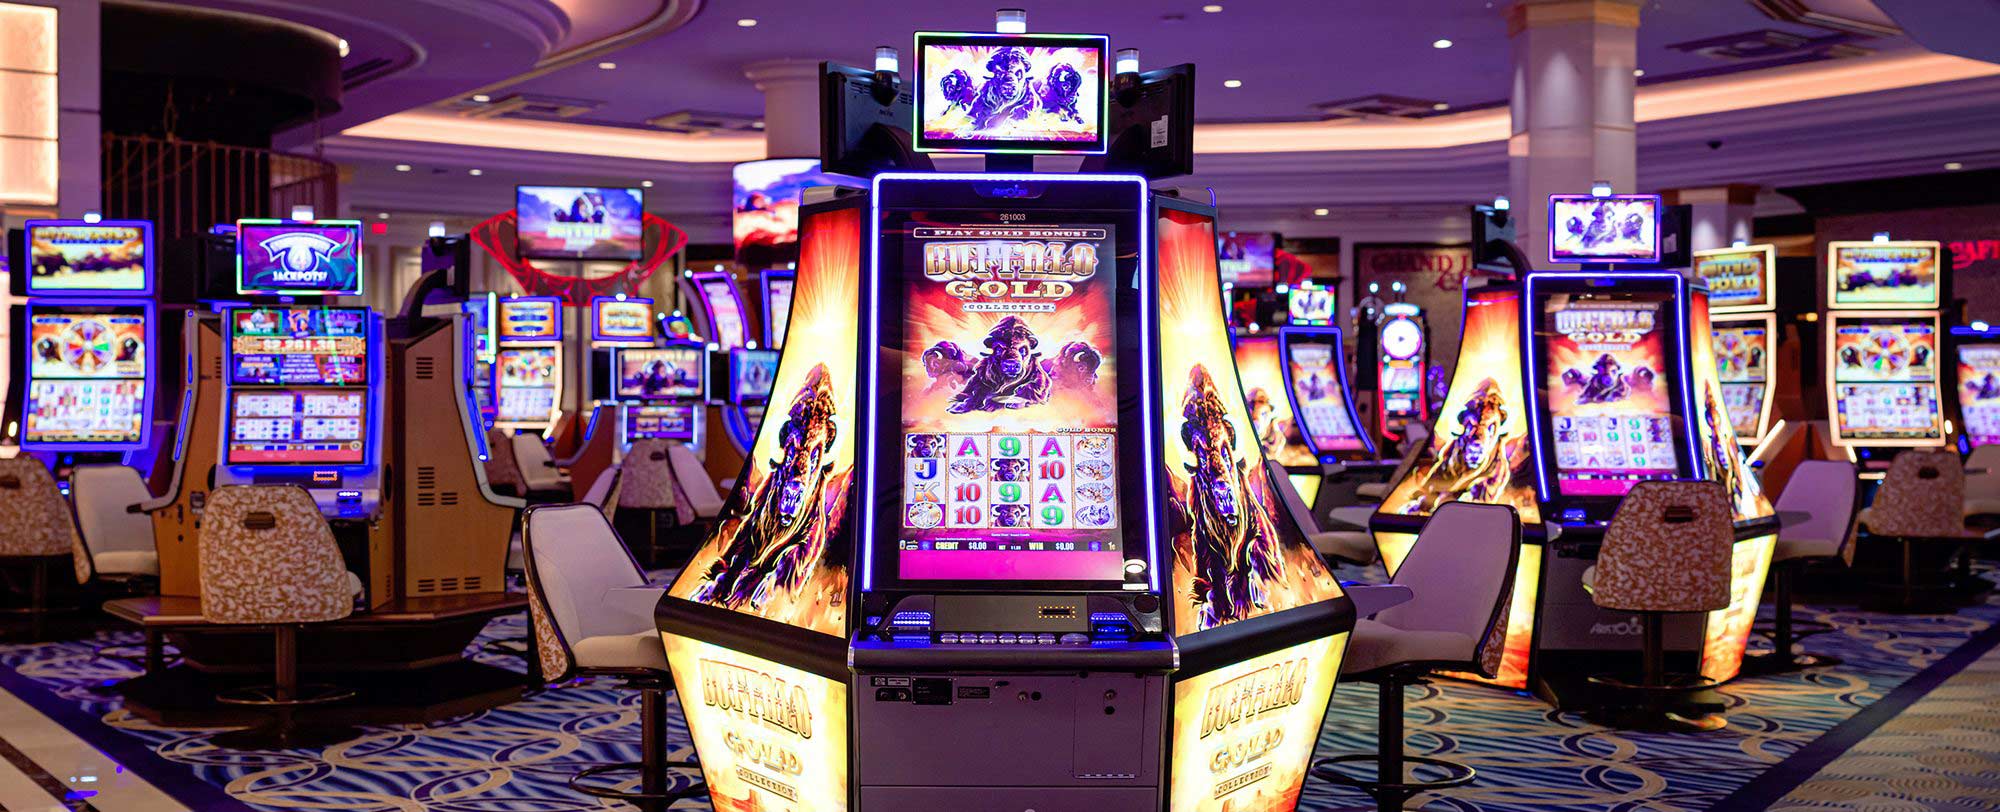 7 jours pour améliorer votre façon de vous Vegas Plus Casino